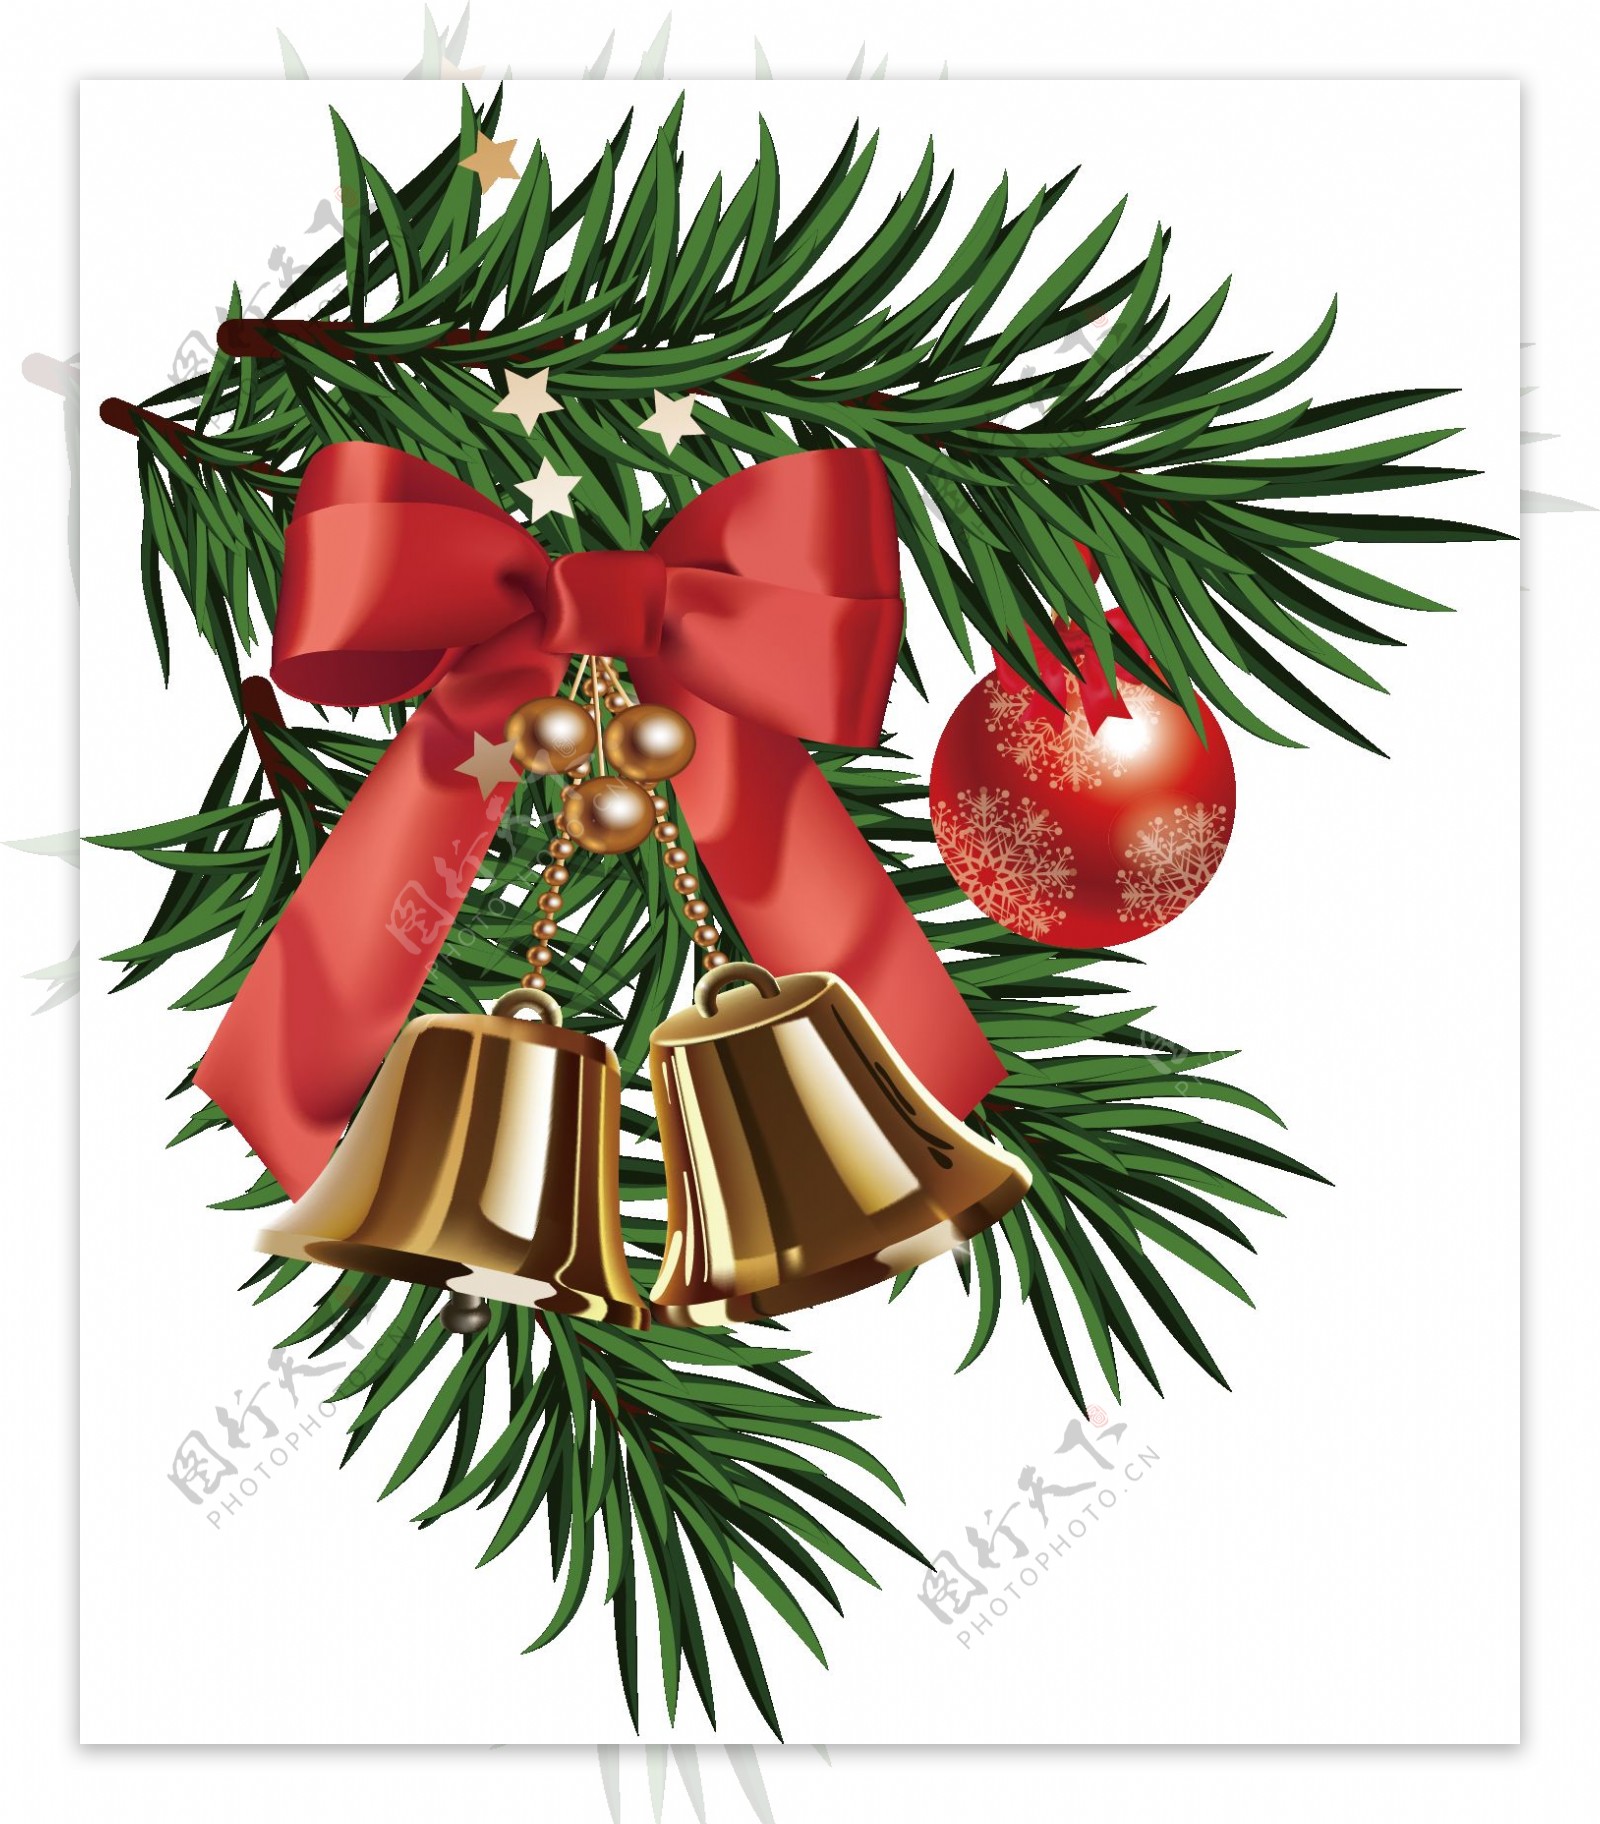 圣诞松枝铃铛装饰元素